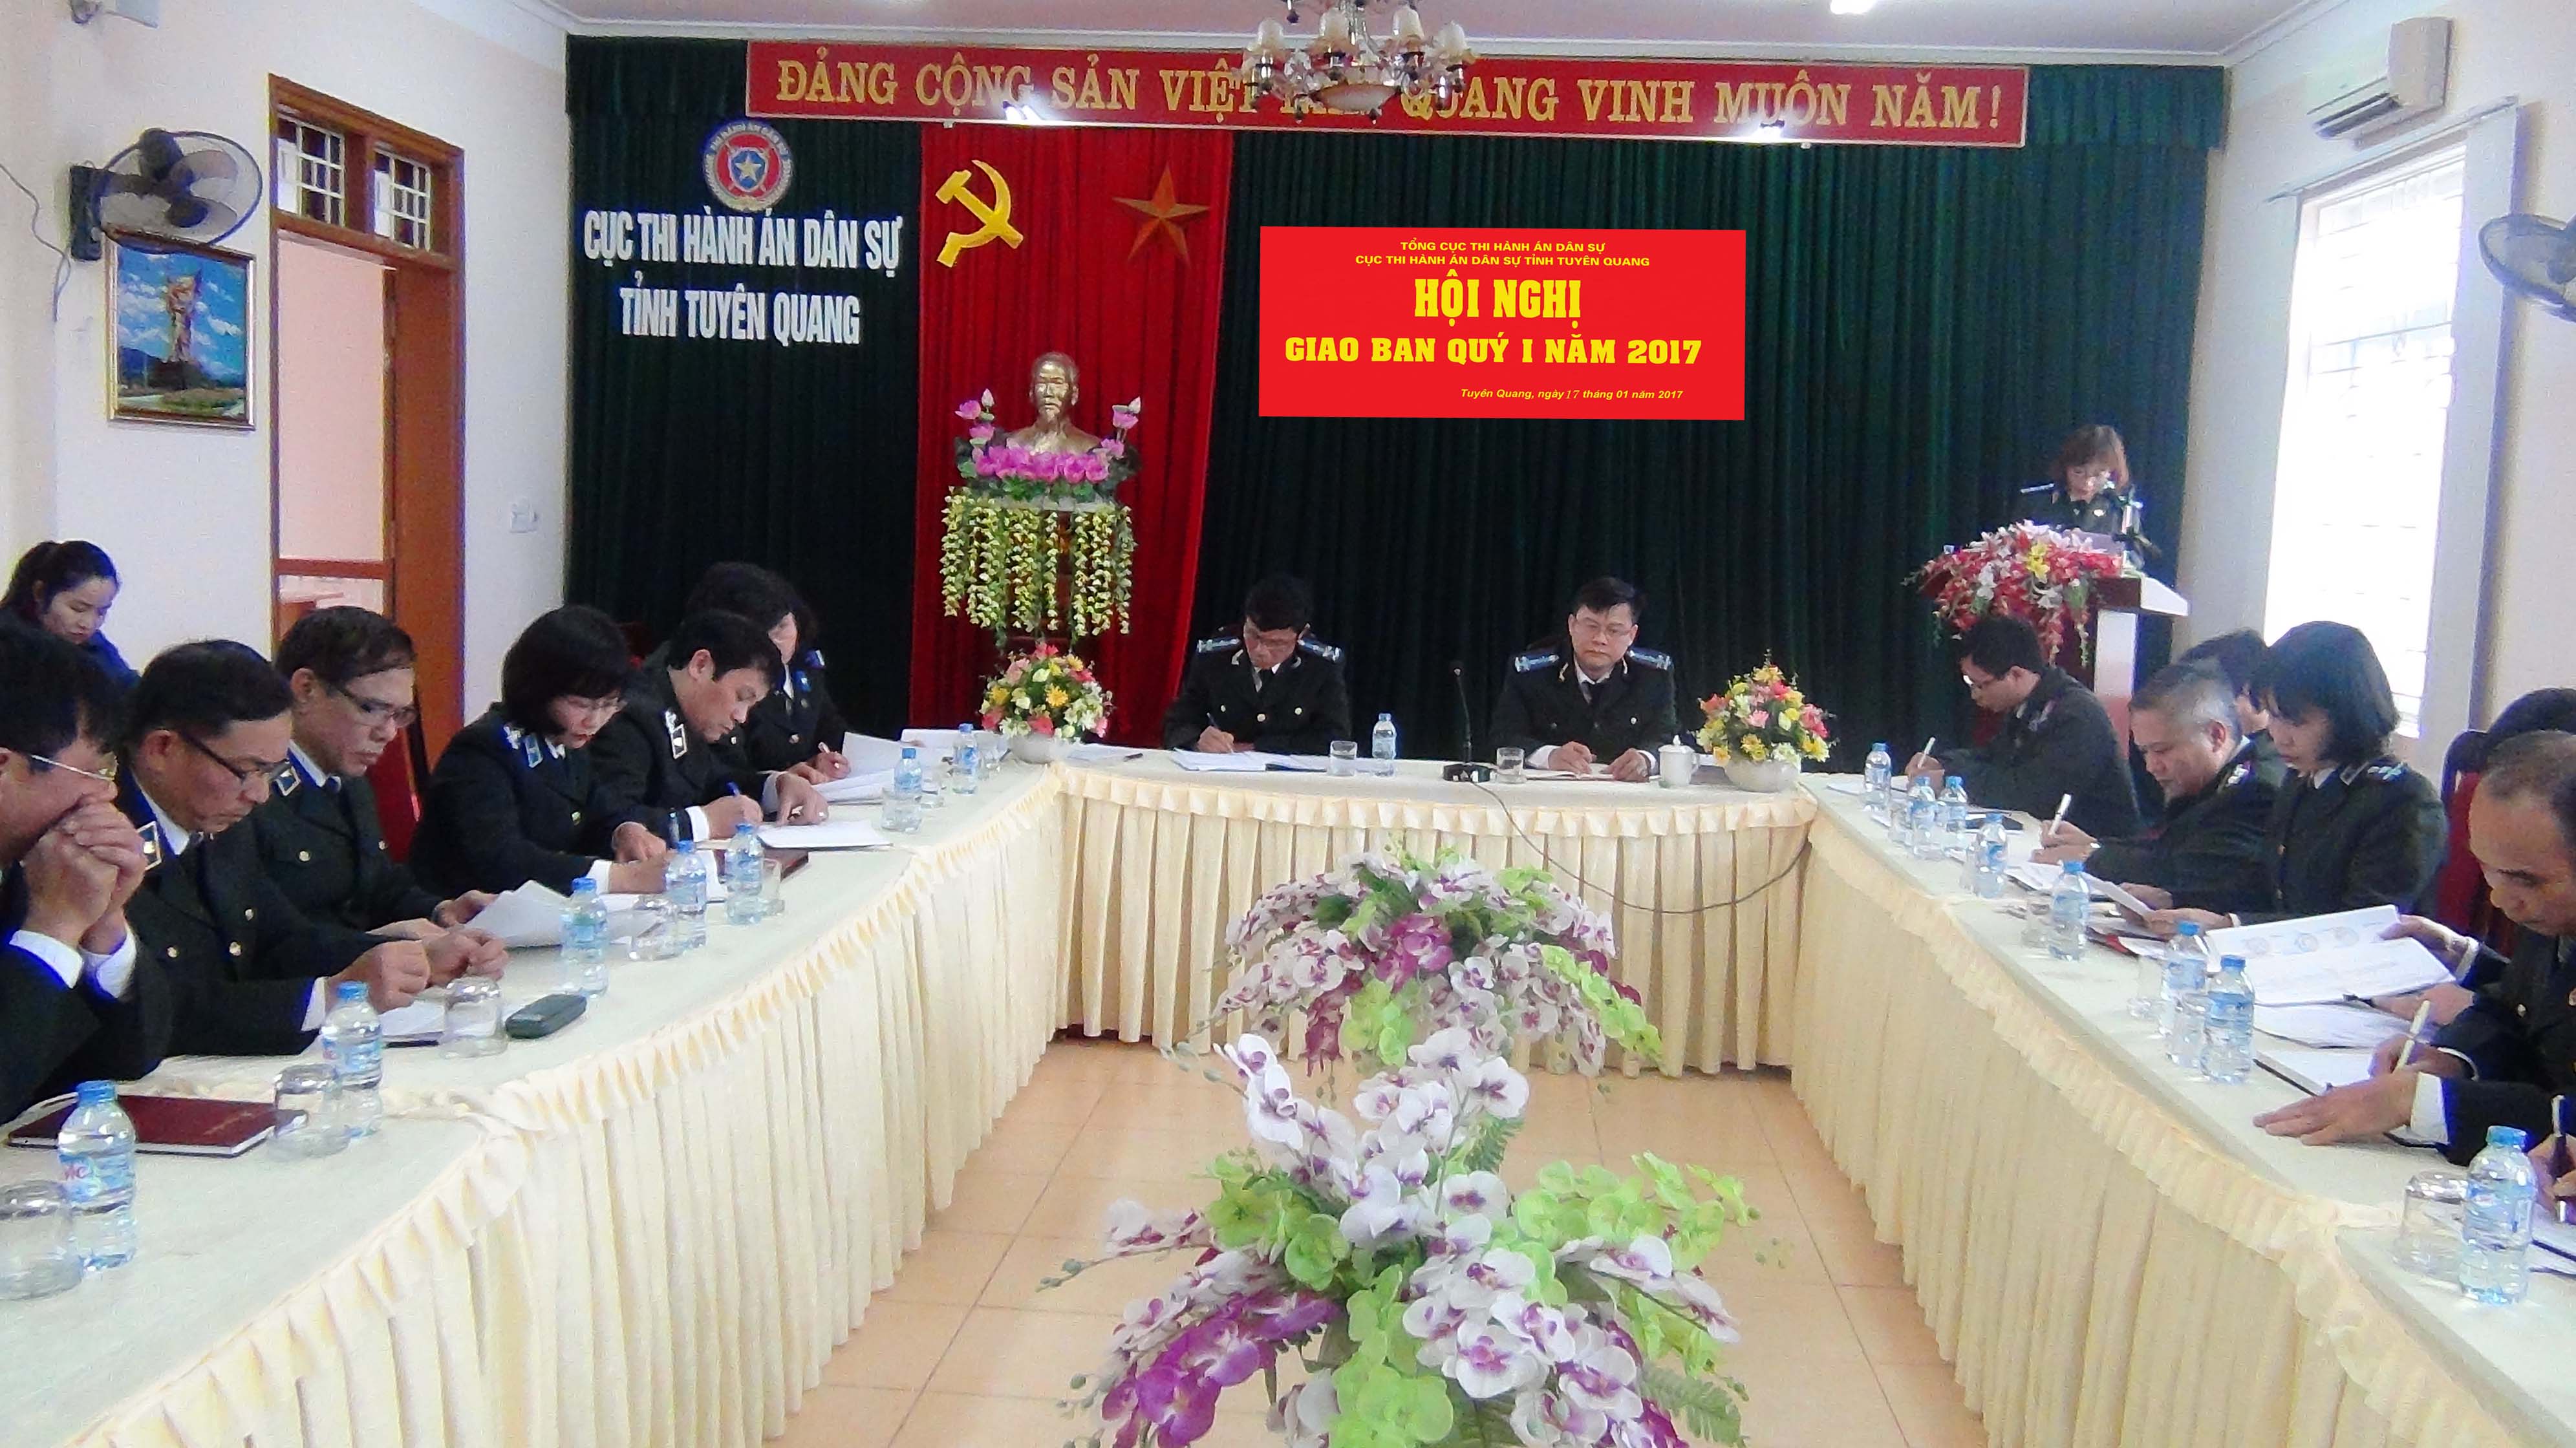 Cục Thi hành án dân sự tỉnh Tuyên Quang tổ chức hội nghị giao ban công tác THADS quý I năm 2017.